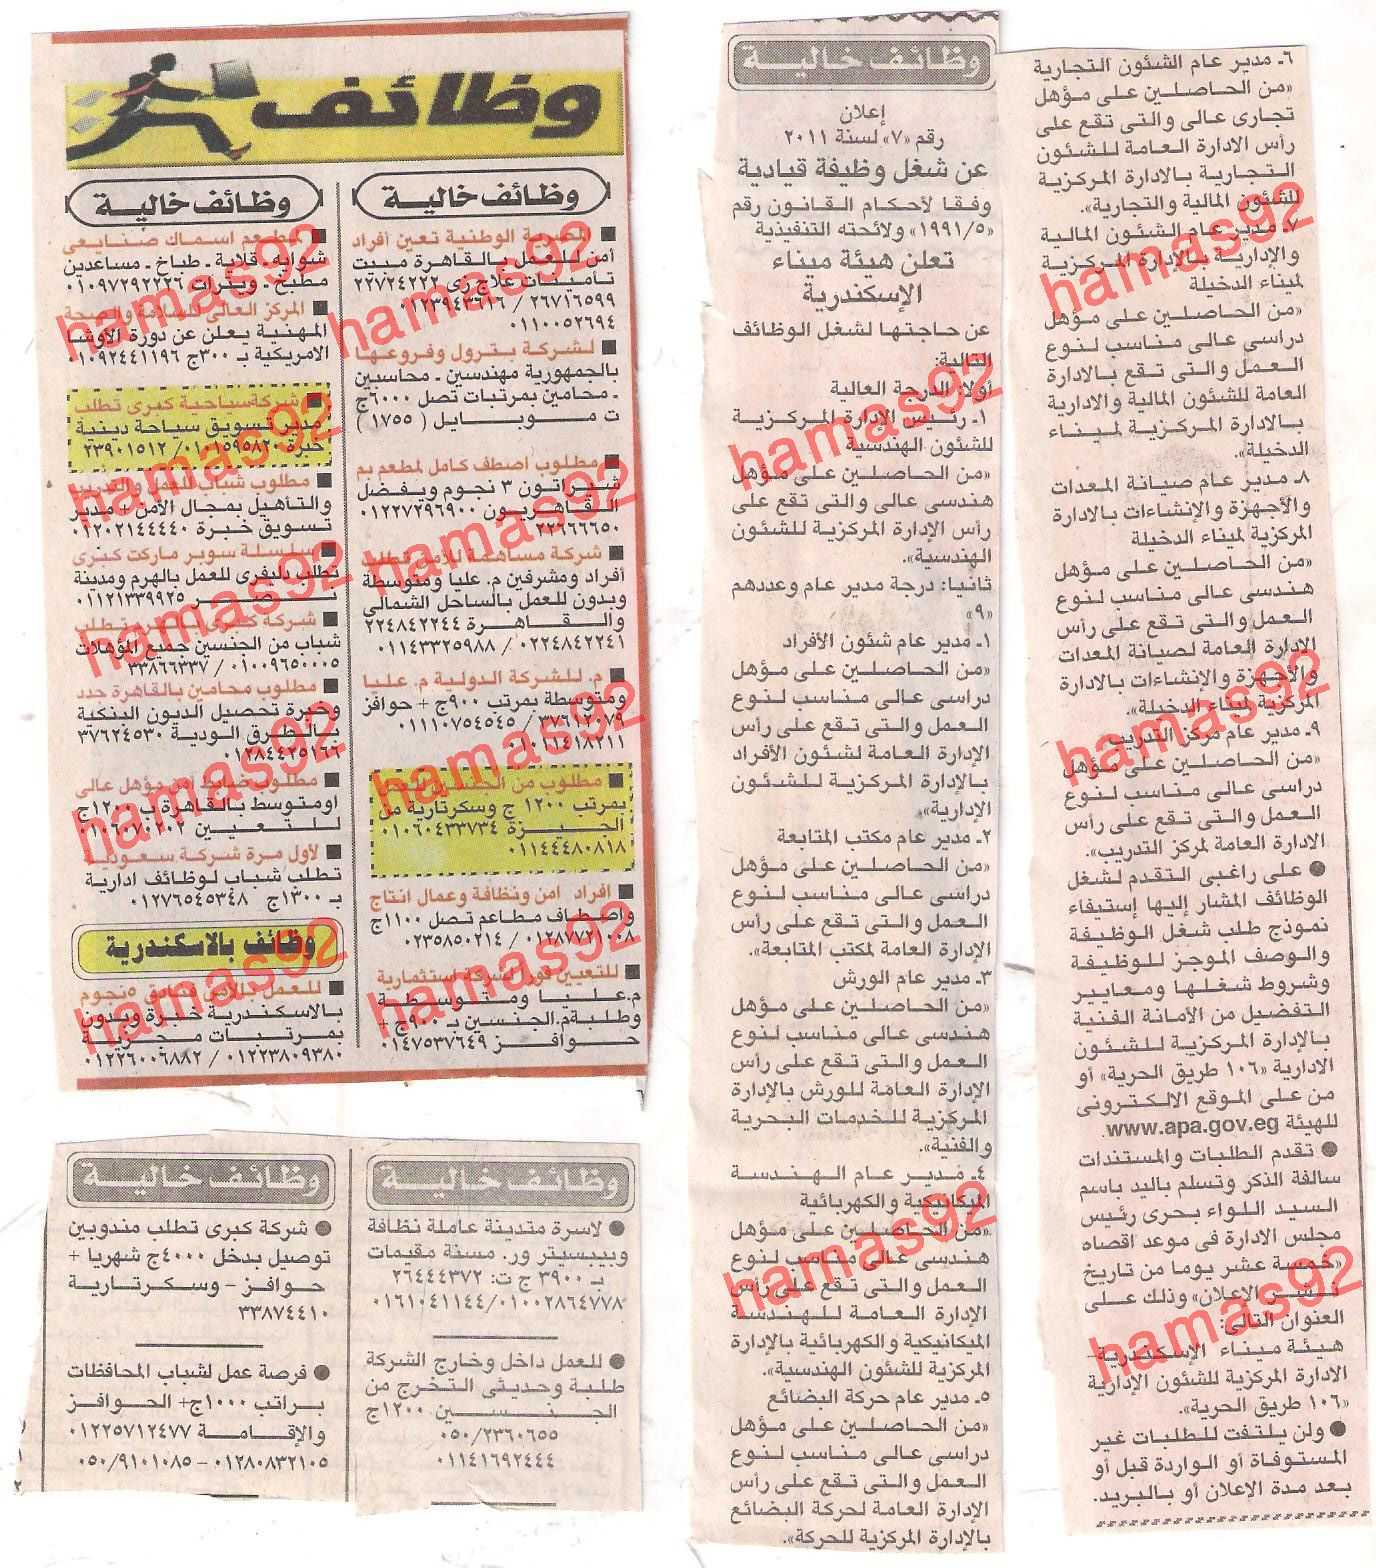 وظائف جريدة اخبار اليوم السبت 10 ديسمبر 2011  Picture+001